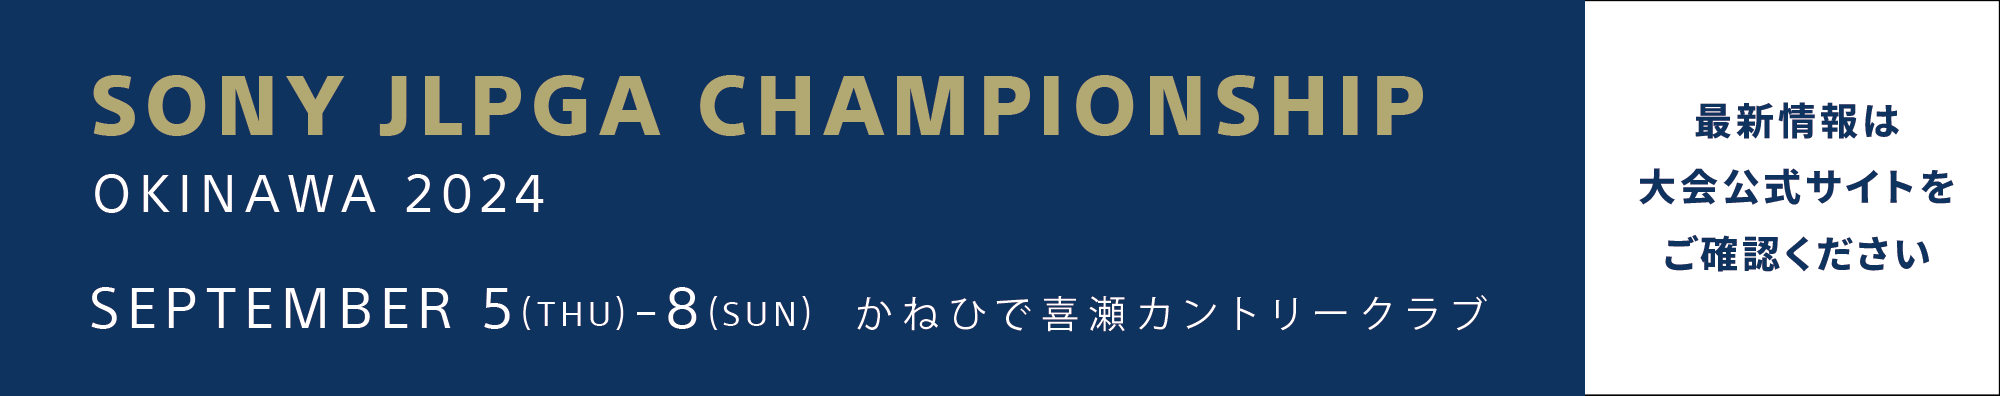 ソニー 日本女子プロゴルフ選手権大会